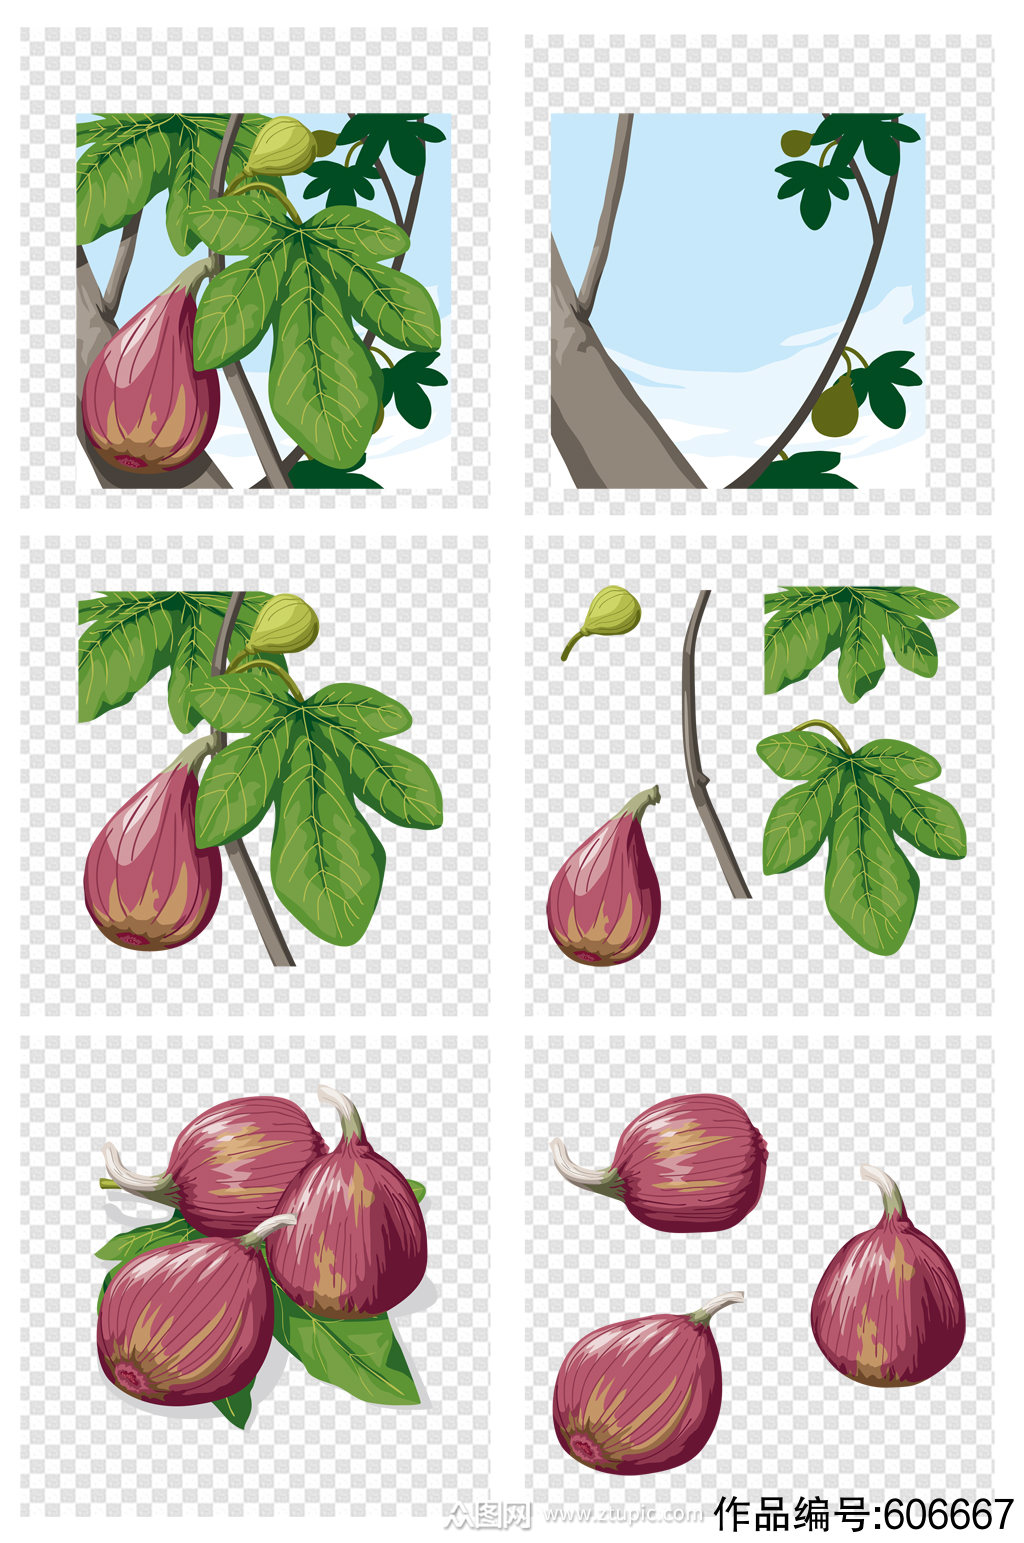 无花果树的树枝与果实和叶子素描插画图片素材_ID:419654772-Veer图库